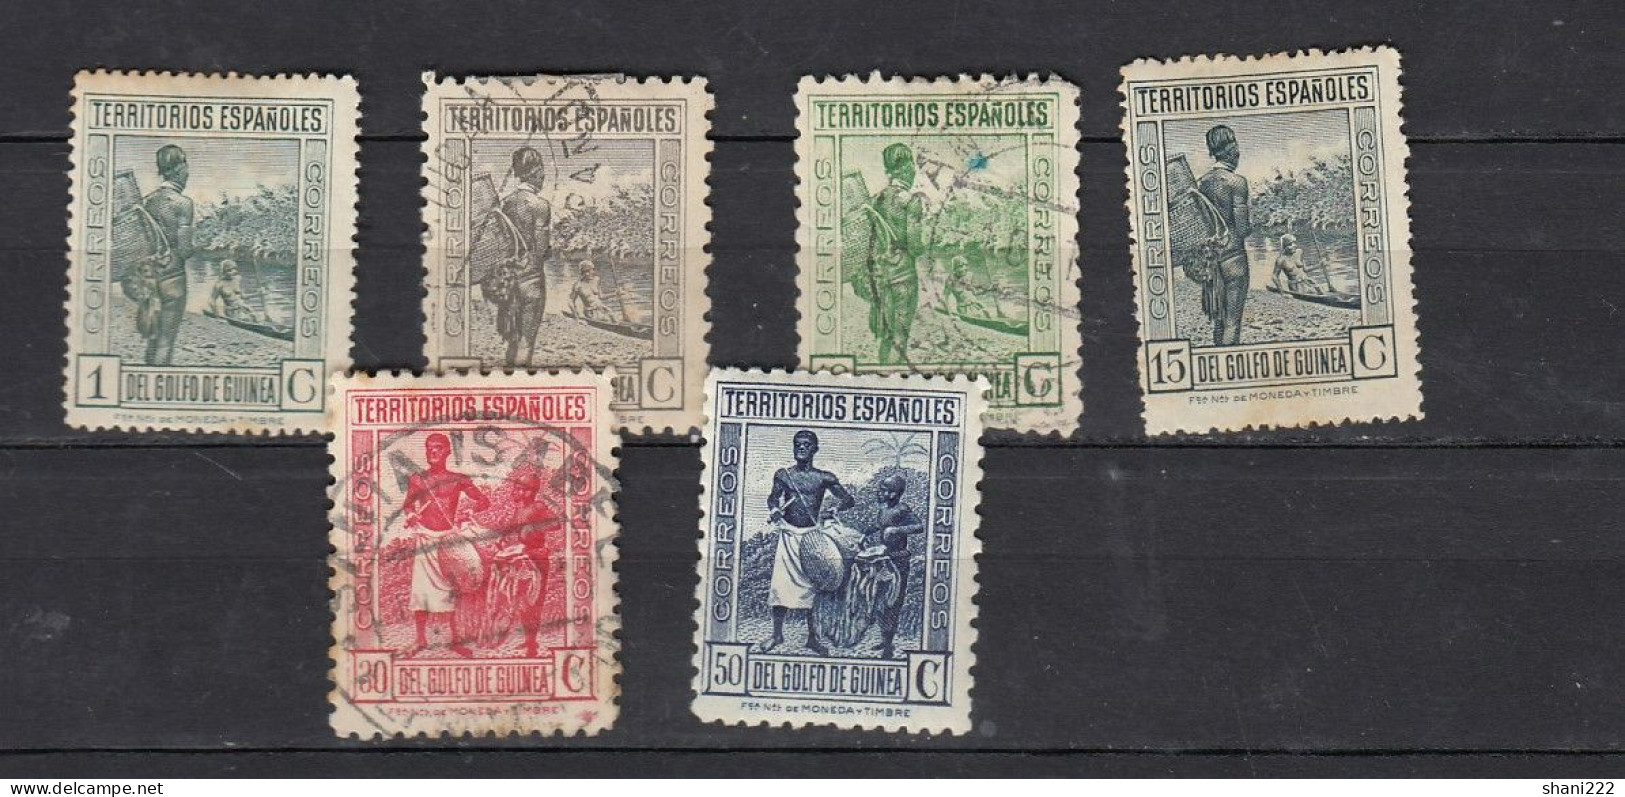 Spanish Guinea 1934 Definitives, Sin Numeracion - 6 Values (e-799) - Spanish Guinea